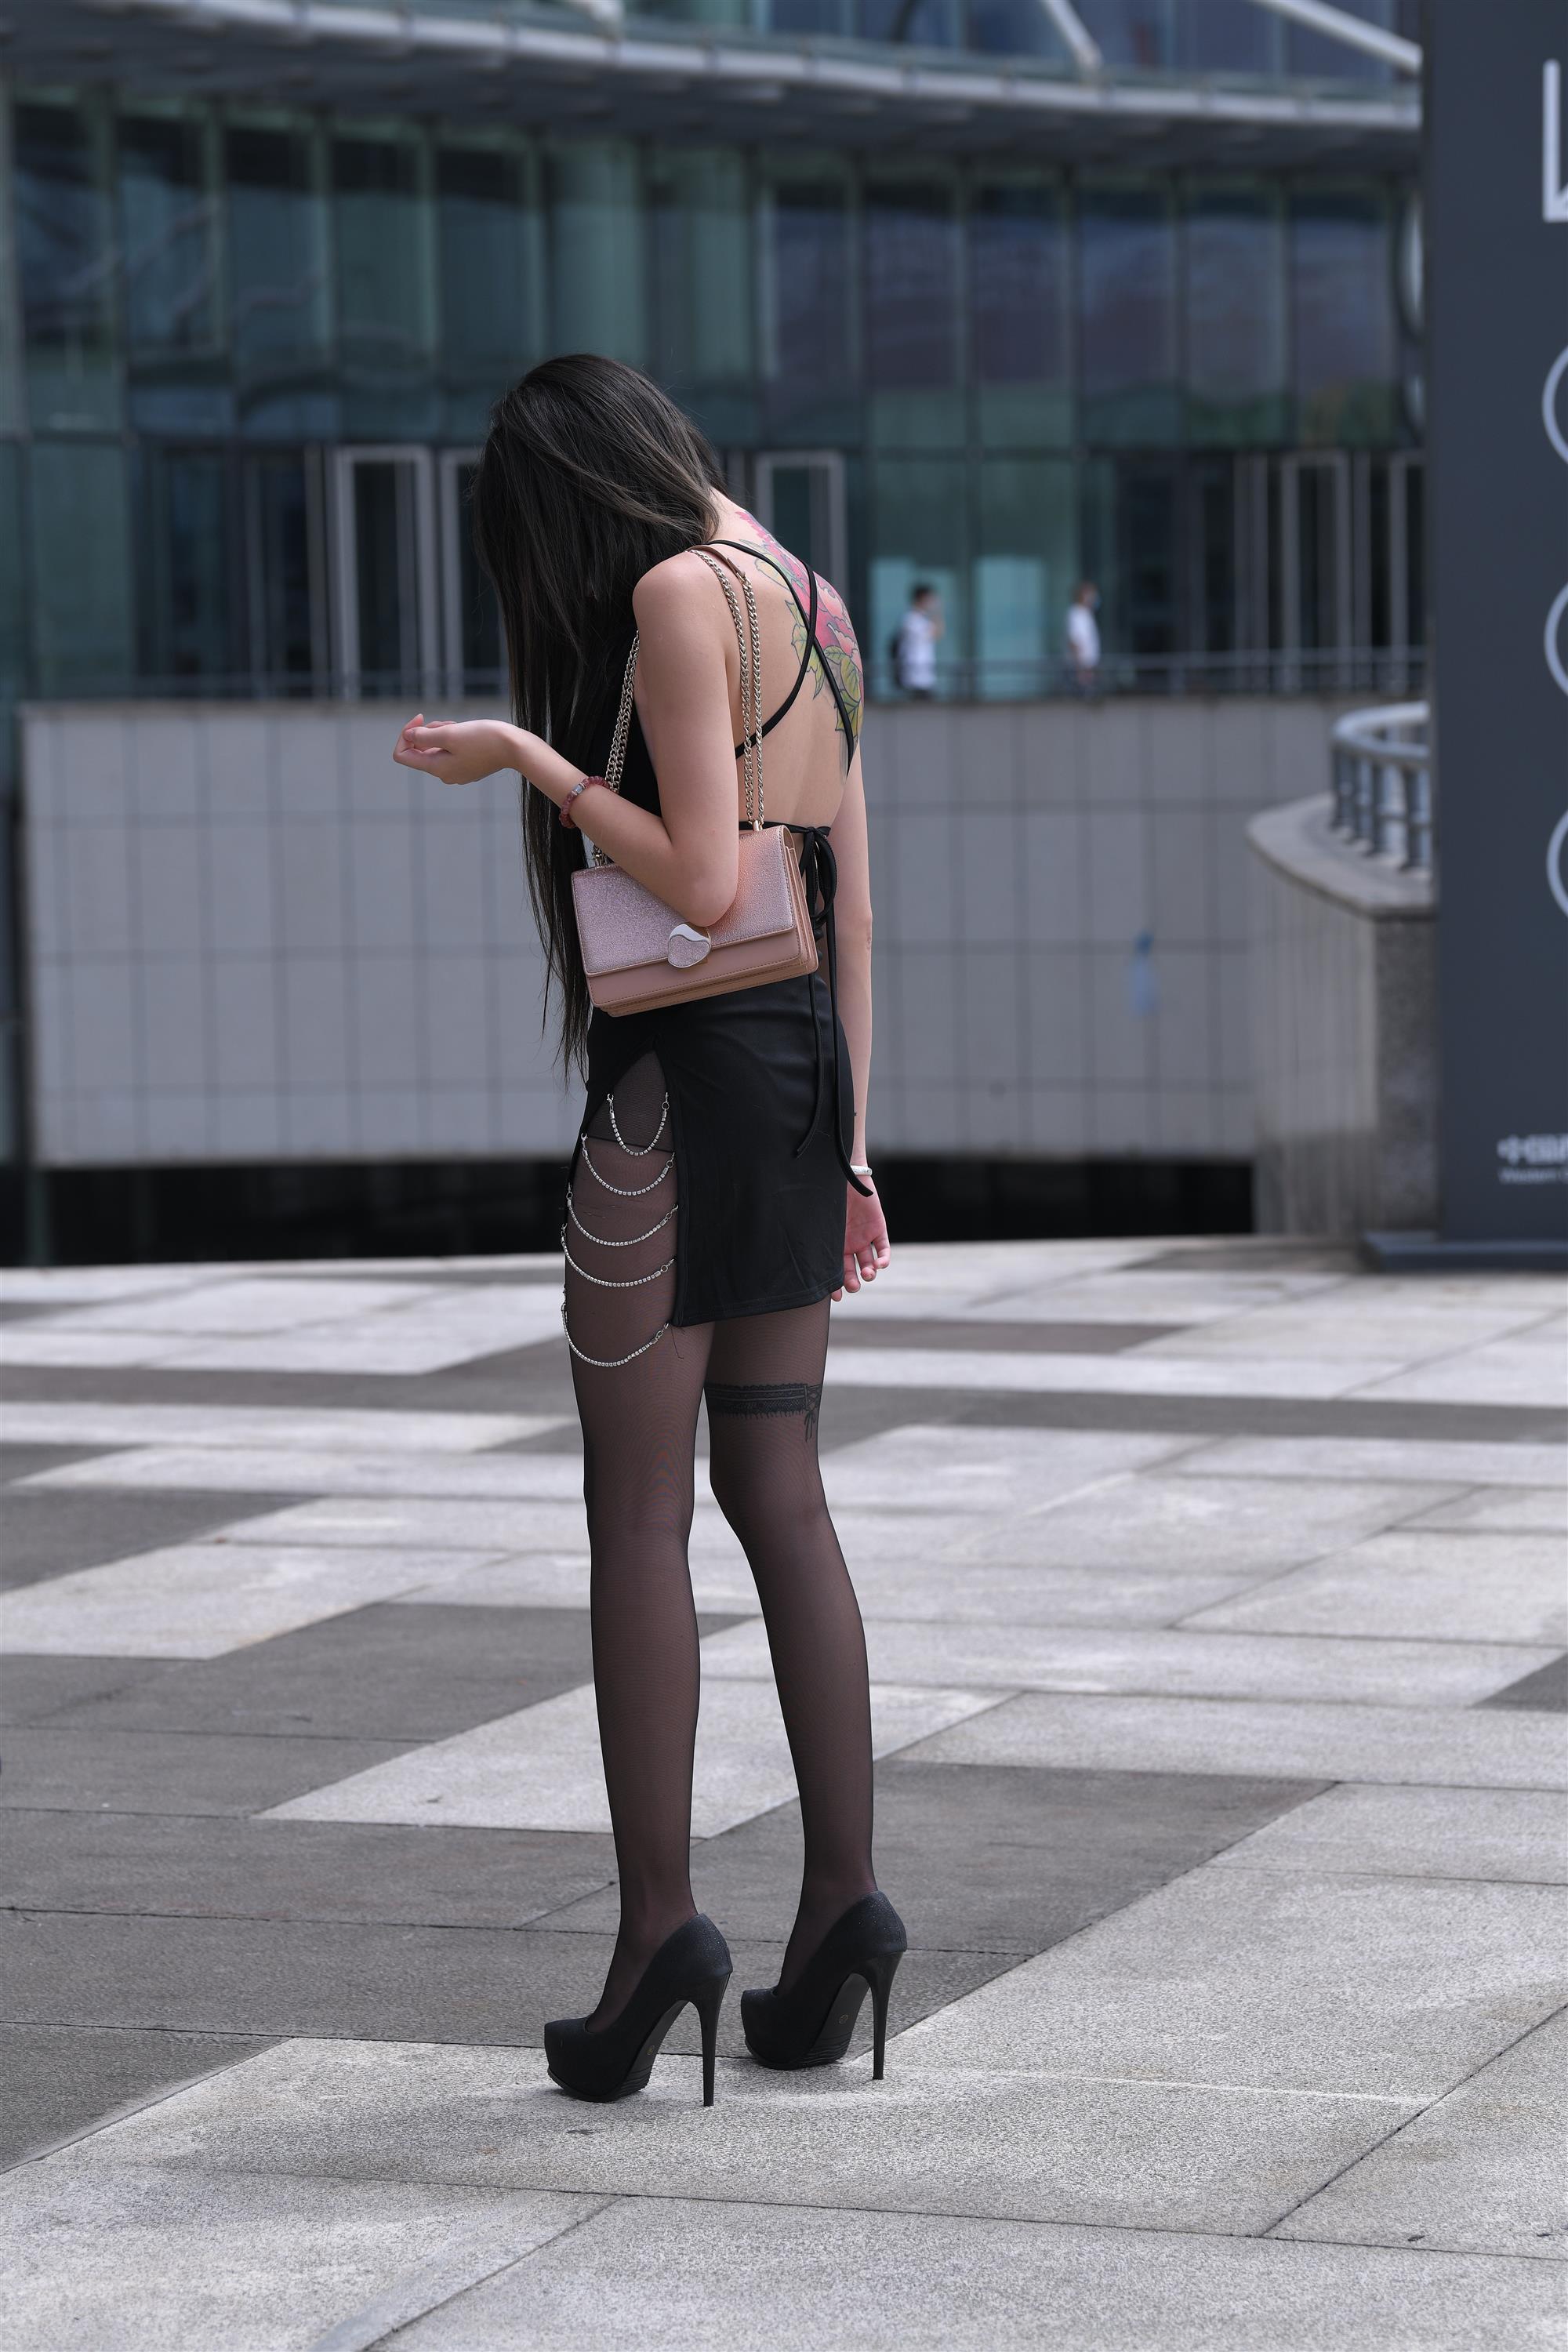 Street black stockings and high heels - 36.jpg